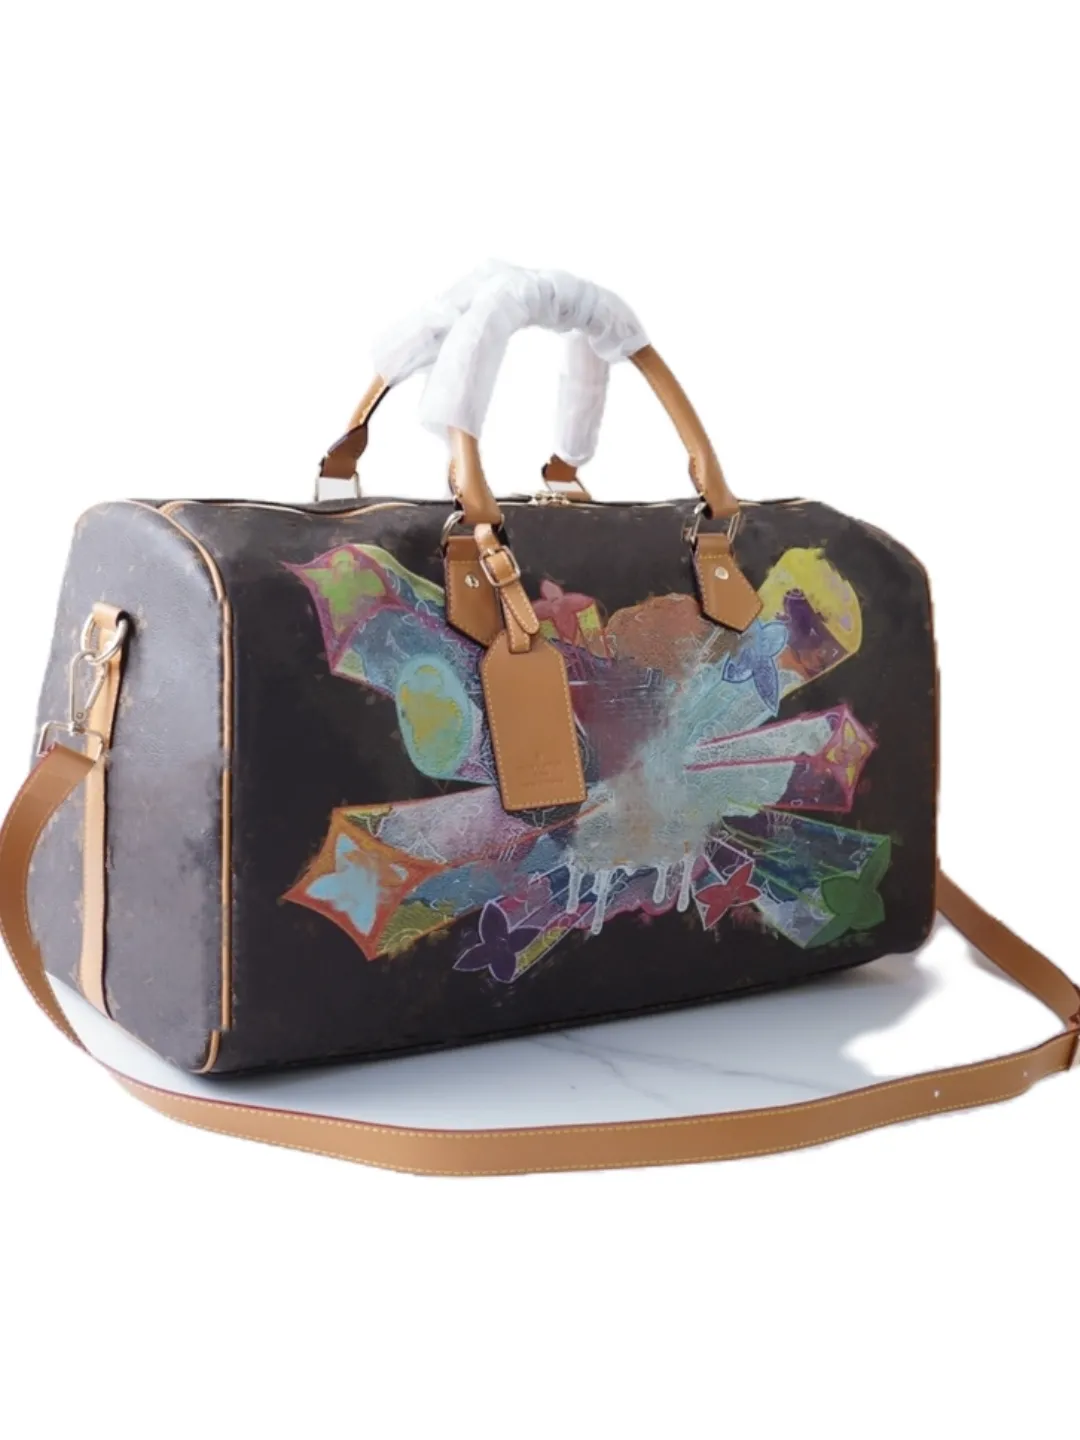 Luxury Bags Mens Duffel Bags Letter Graffiti Brown Flower Travel Bag Totes Luggage Bag Duffel Bags Women Fitness Yoga Bags Shoulder Bags Crossbody Handbags